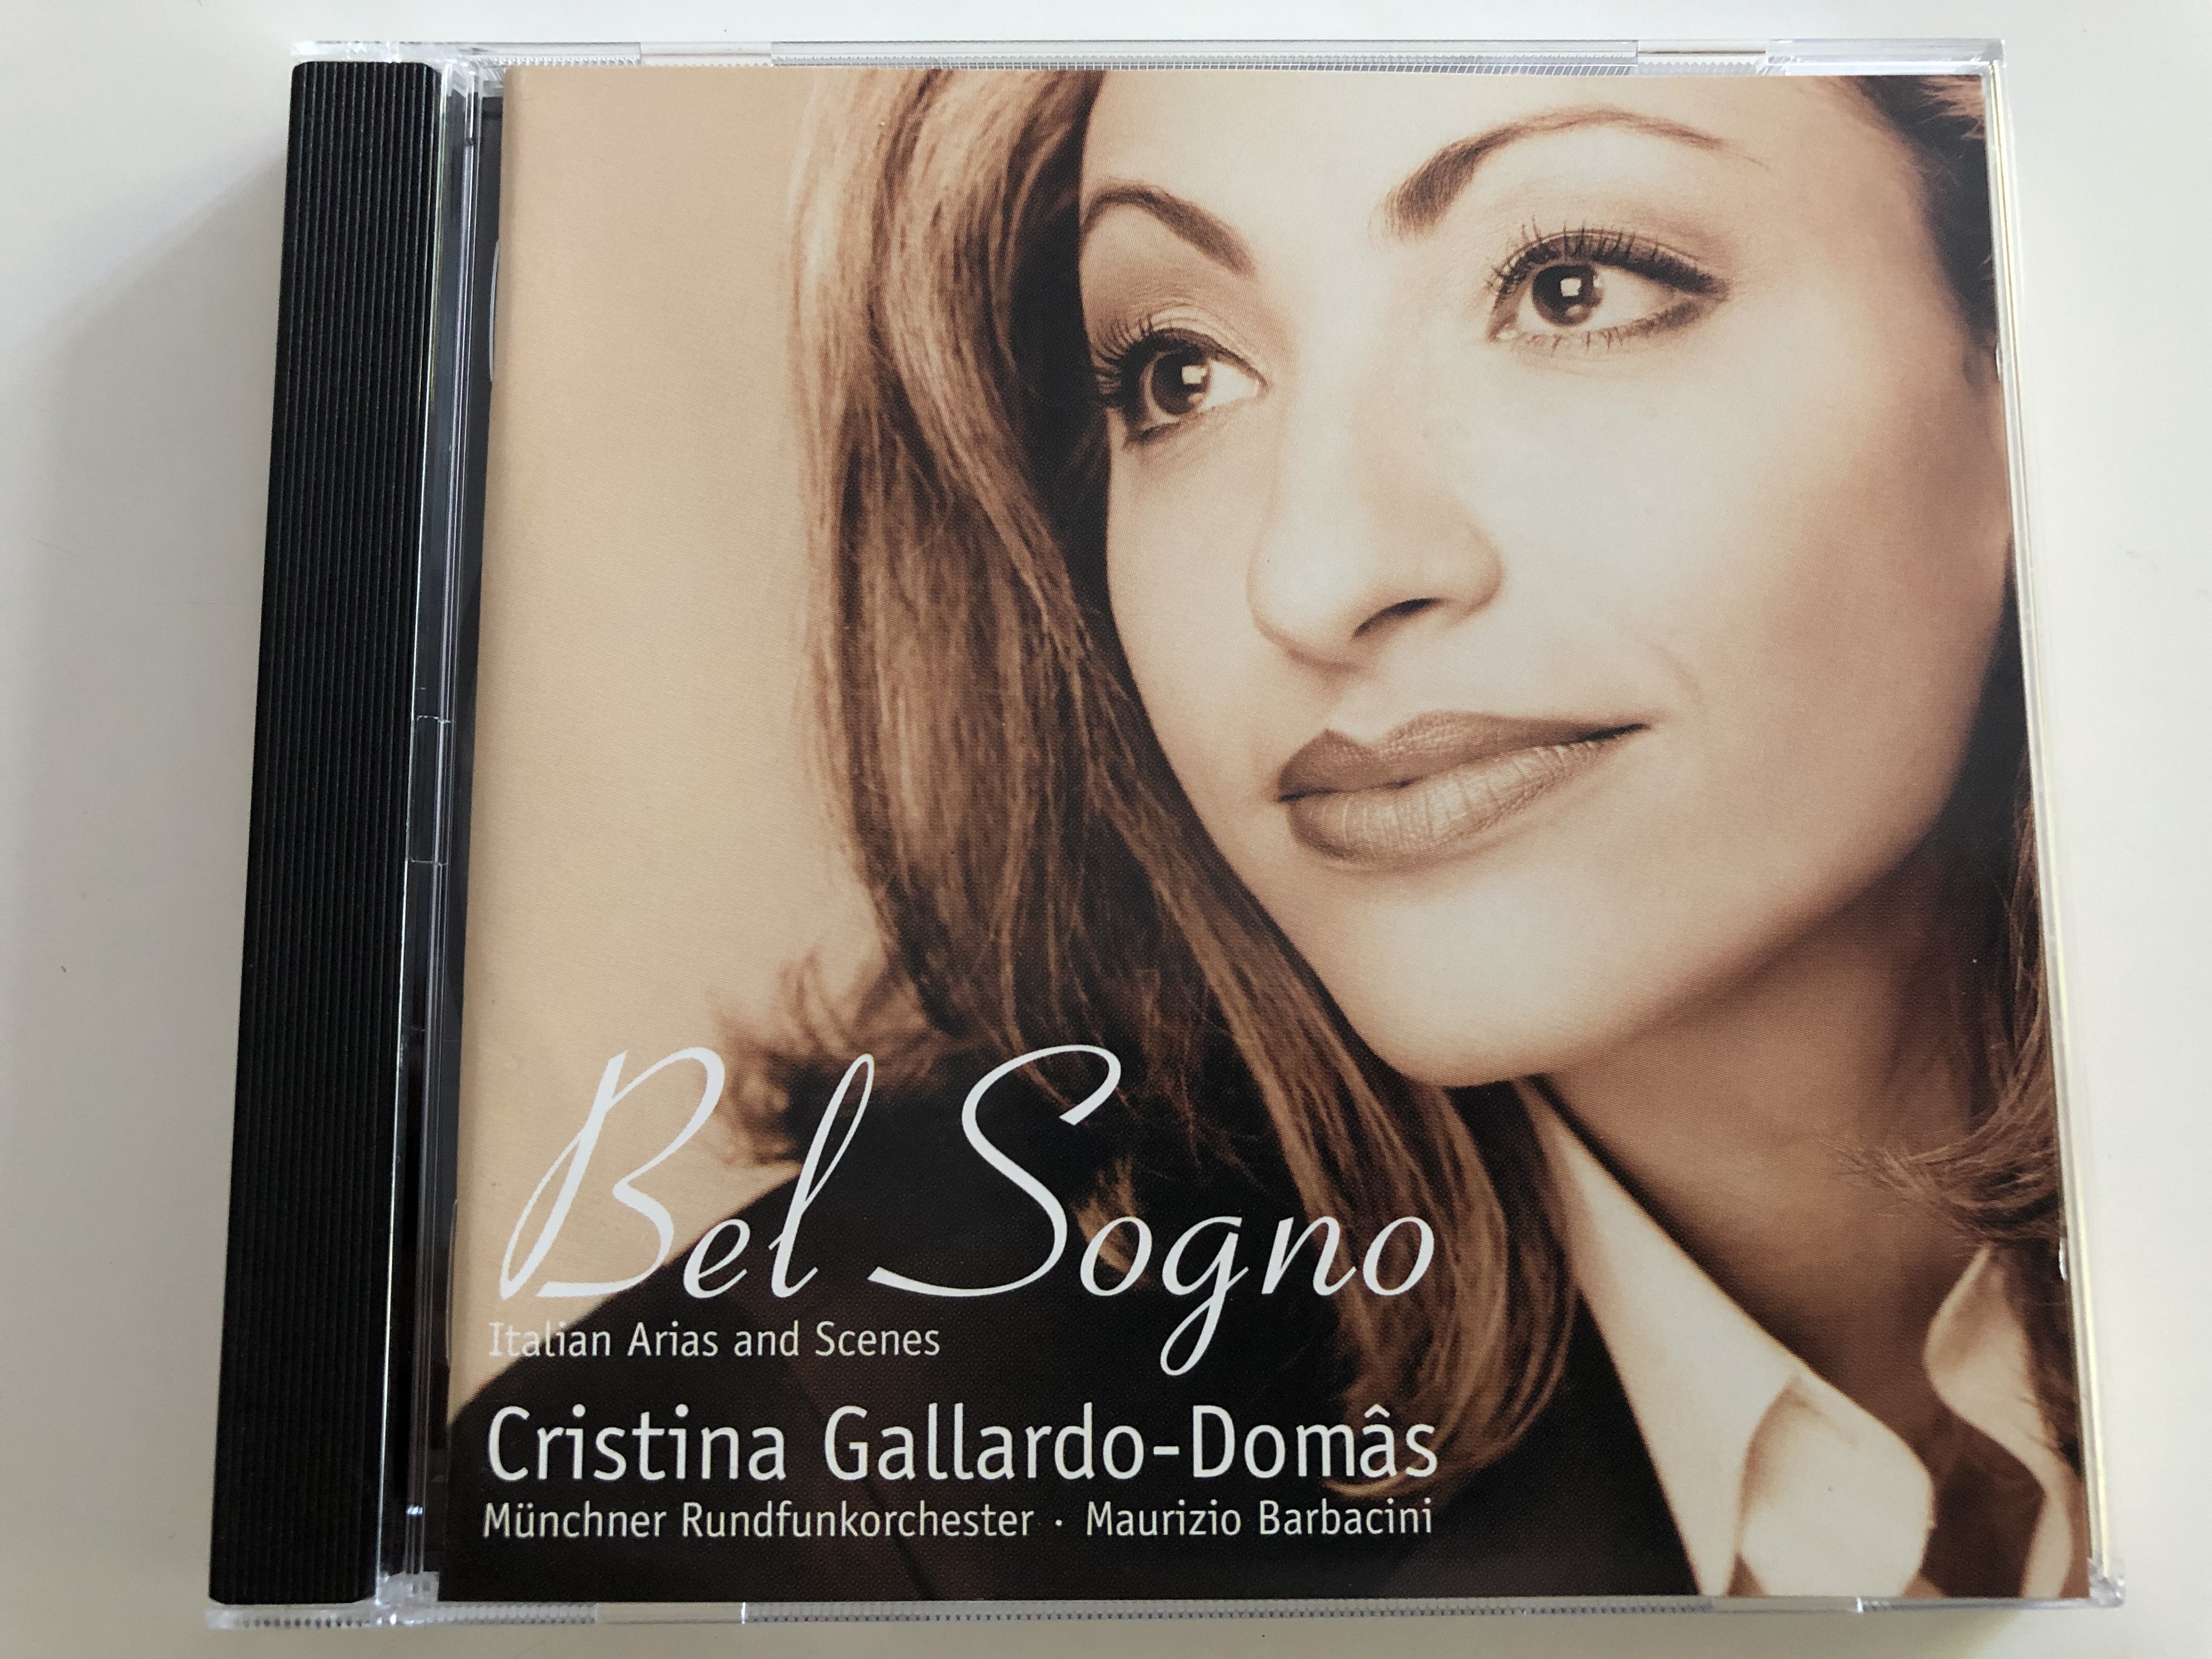 -cristina-gallardo-domas-bel-sogno-italian-arias-and-scenes-m-nchner-rundfunkorchester-conducted-by-maurizio-barbacini-audio-cd-2001-teldec-1-.jpg